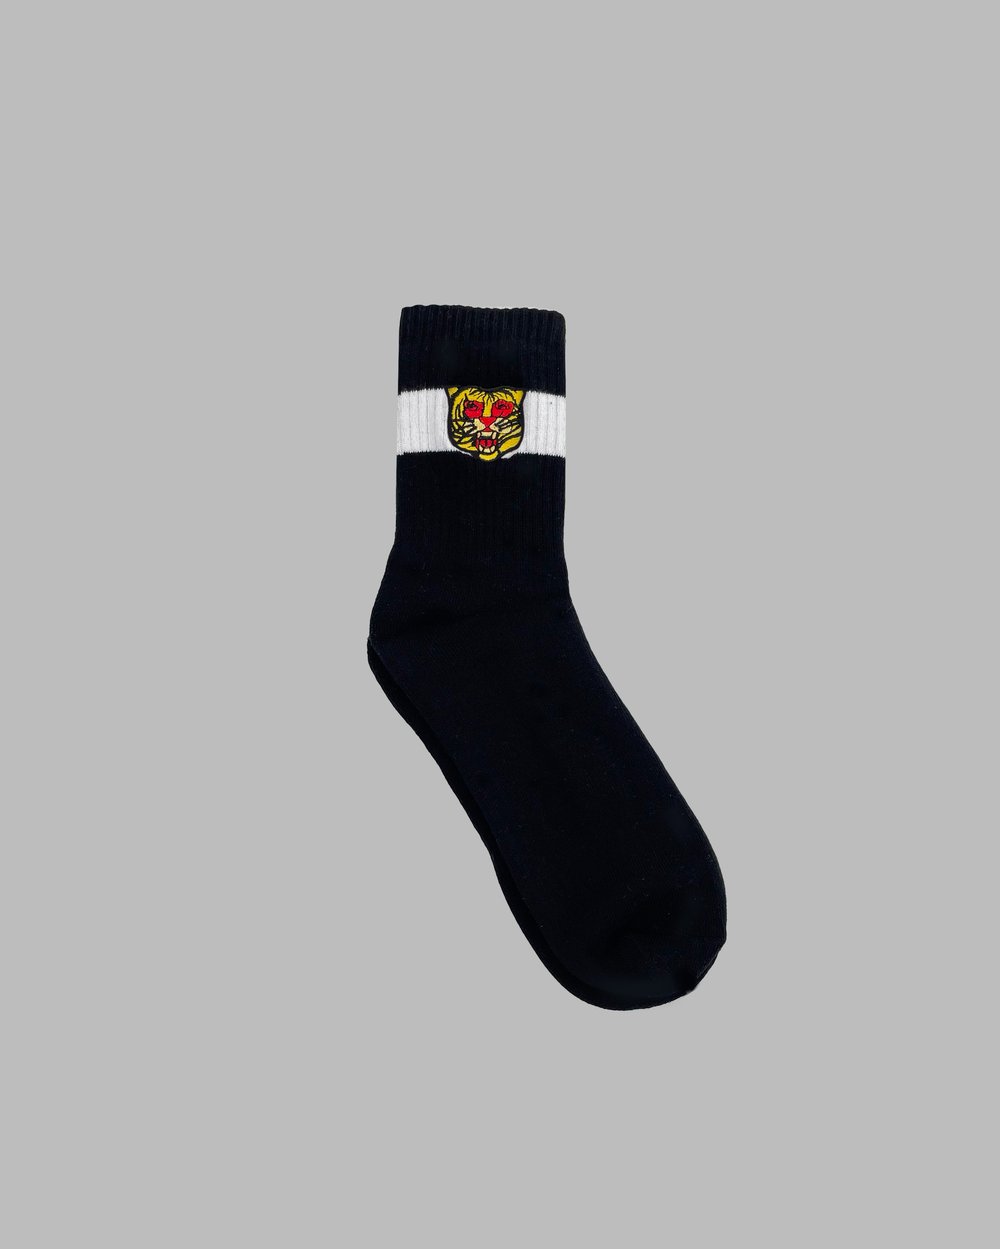 Image of The BLAK Socks in Black & White